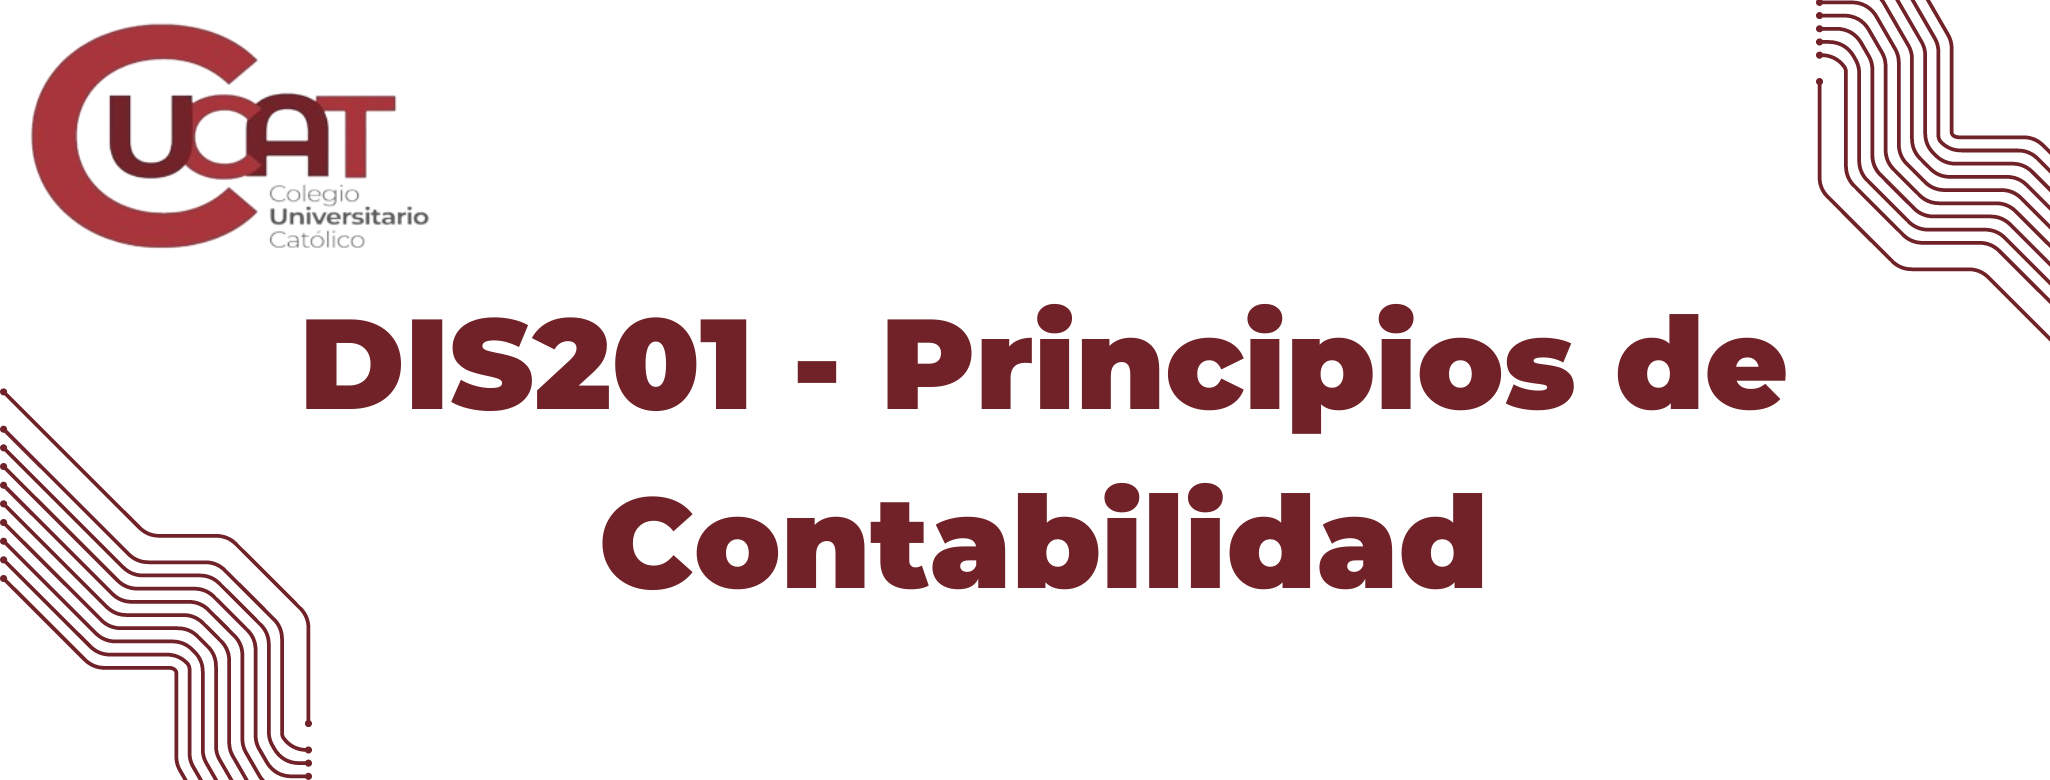 DIS201-Principios de Contabilidad